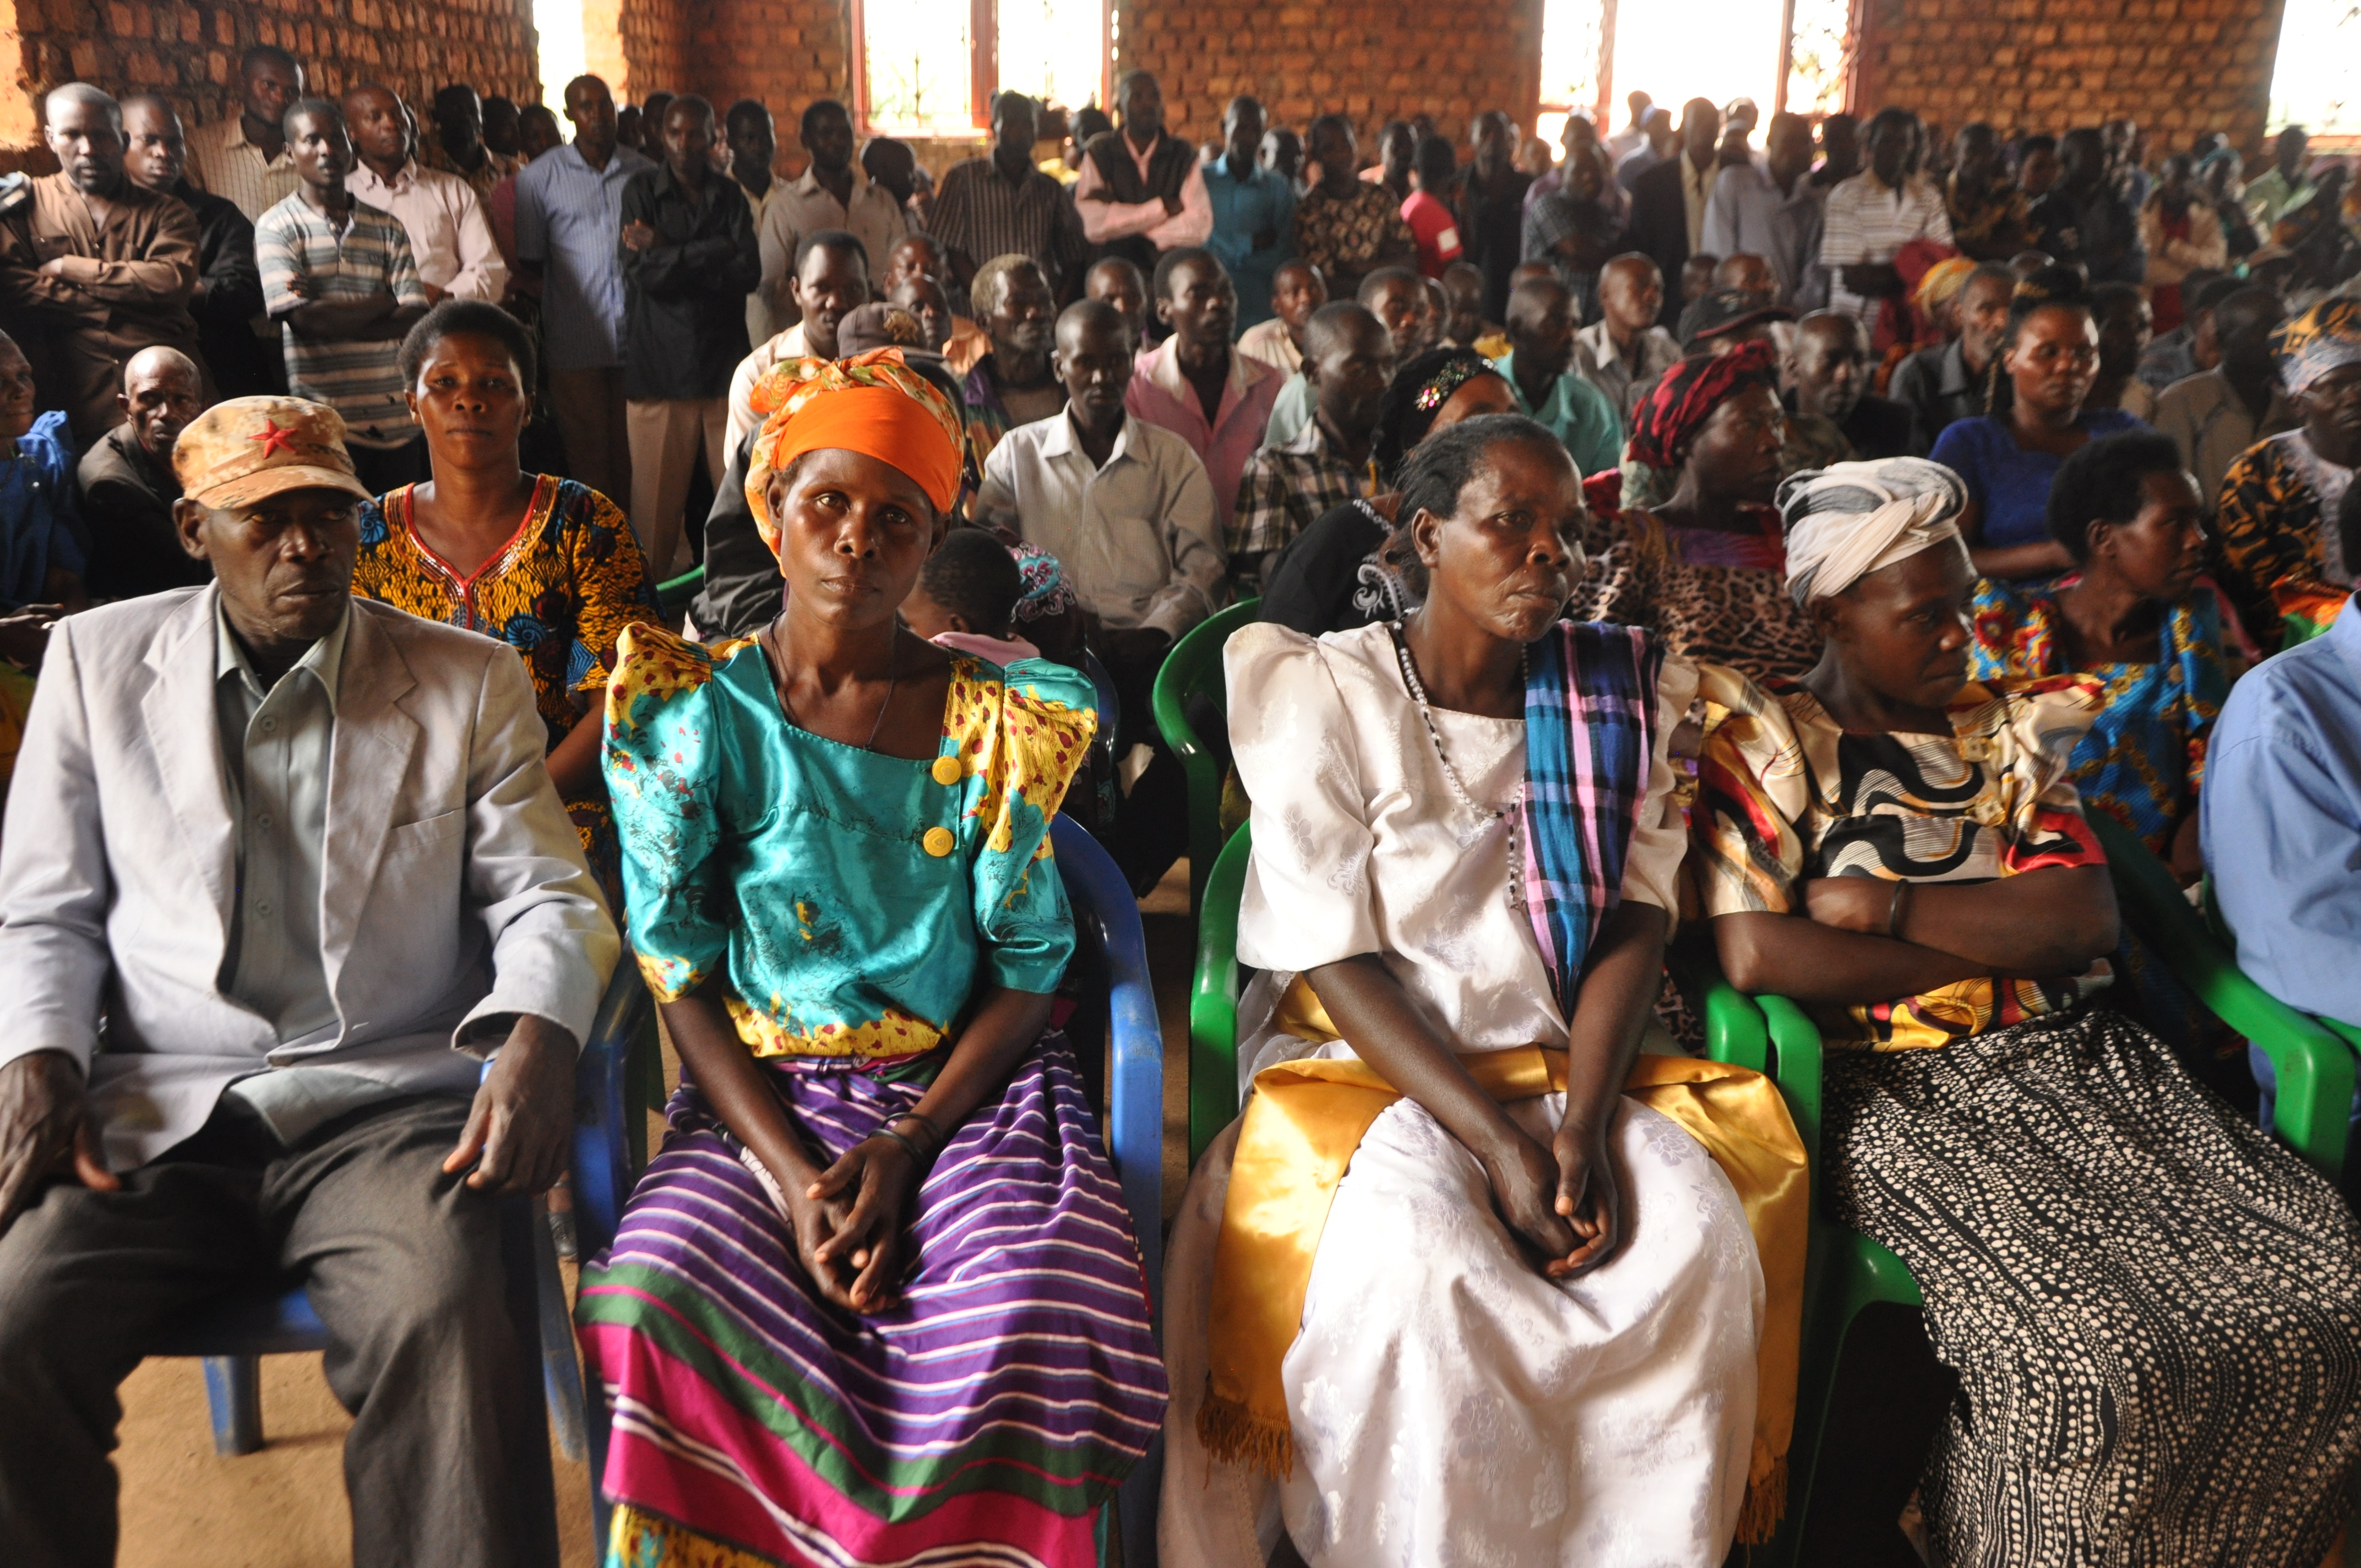 Pour la plantation de caféiers de Neumann Kaffee Gruppe à Kaweri, l’armée ougandaise a expulsé en 2001 plus de 4000 personnes de leurs villages. Elles n’ont toujours pas obtenu réparation et continuent de réclamer leurs droits.© FIAN